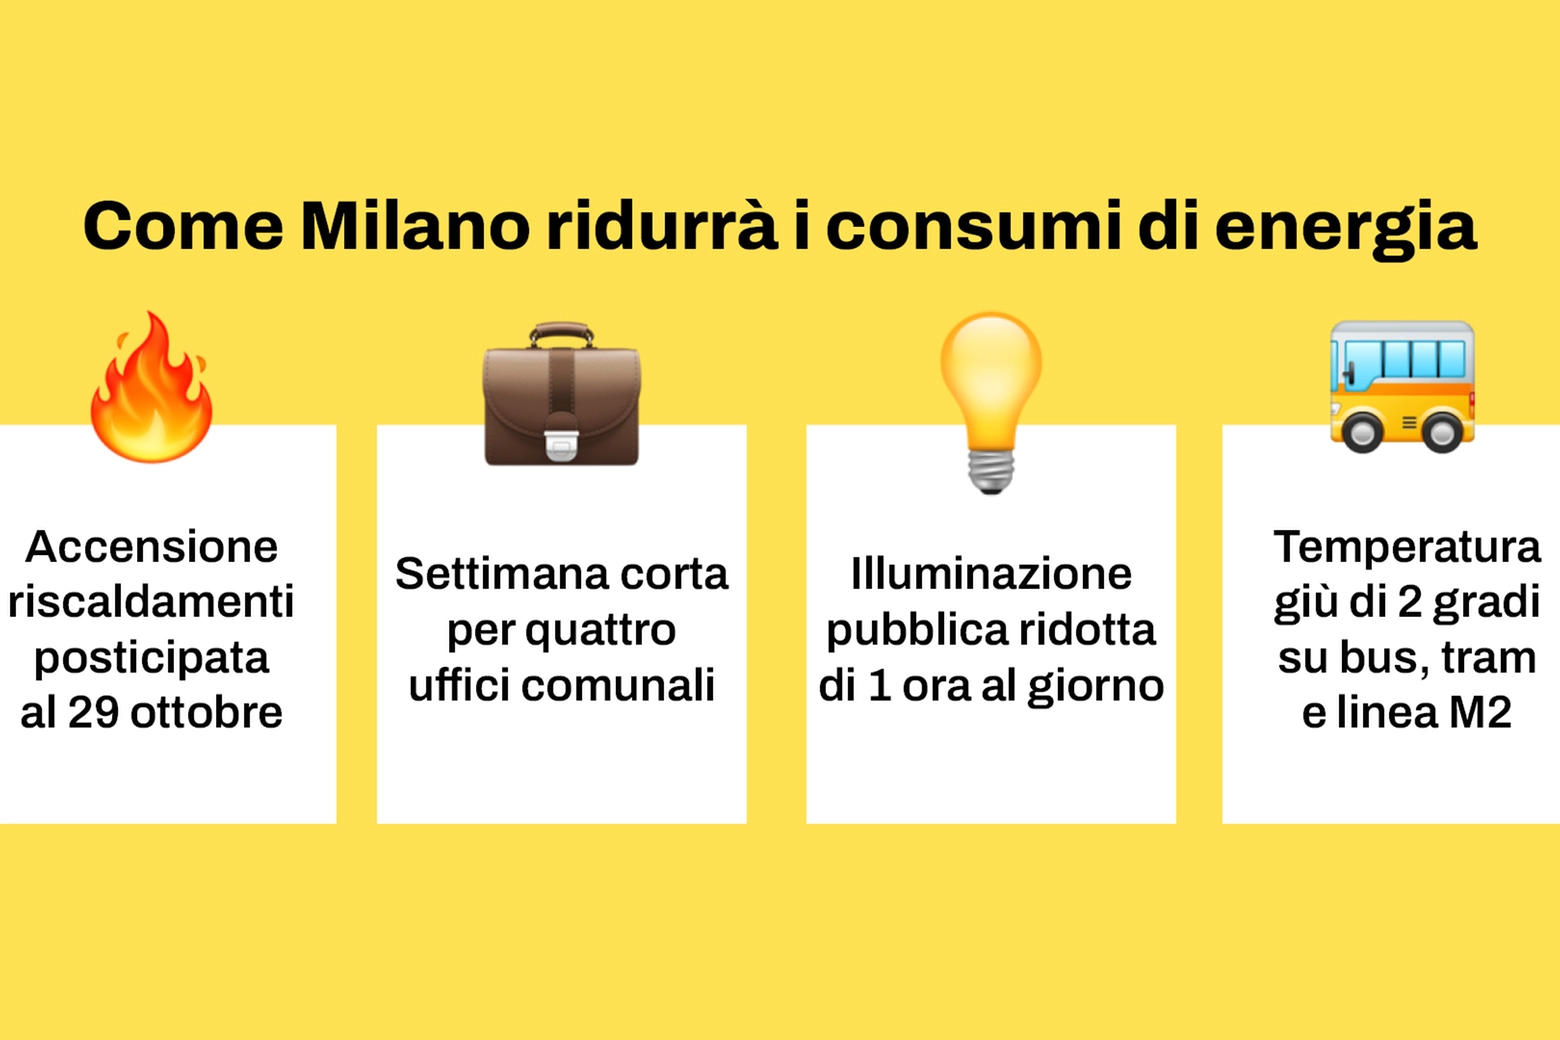 Risparmio energetico comune Milano, le misure approvate